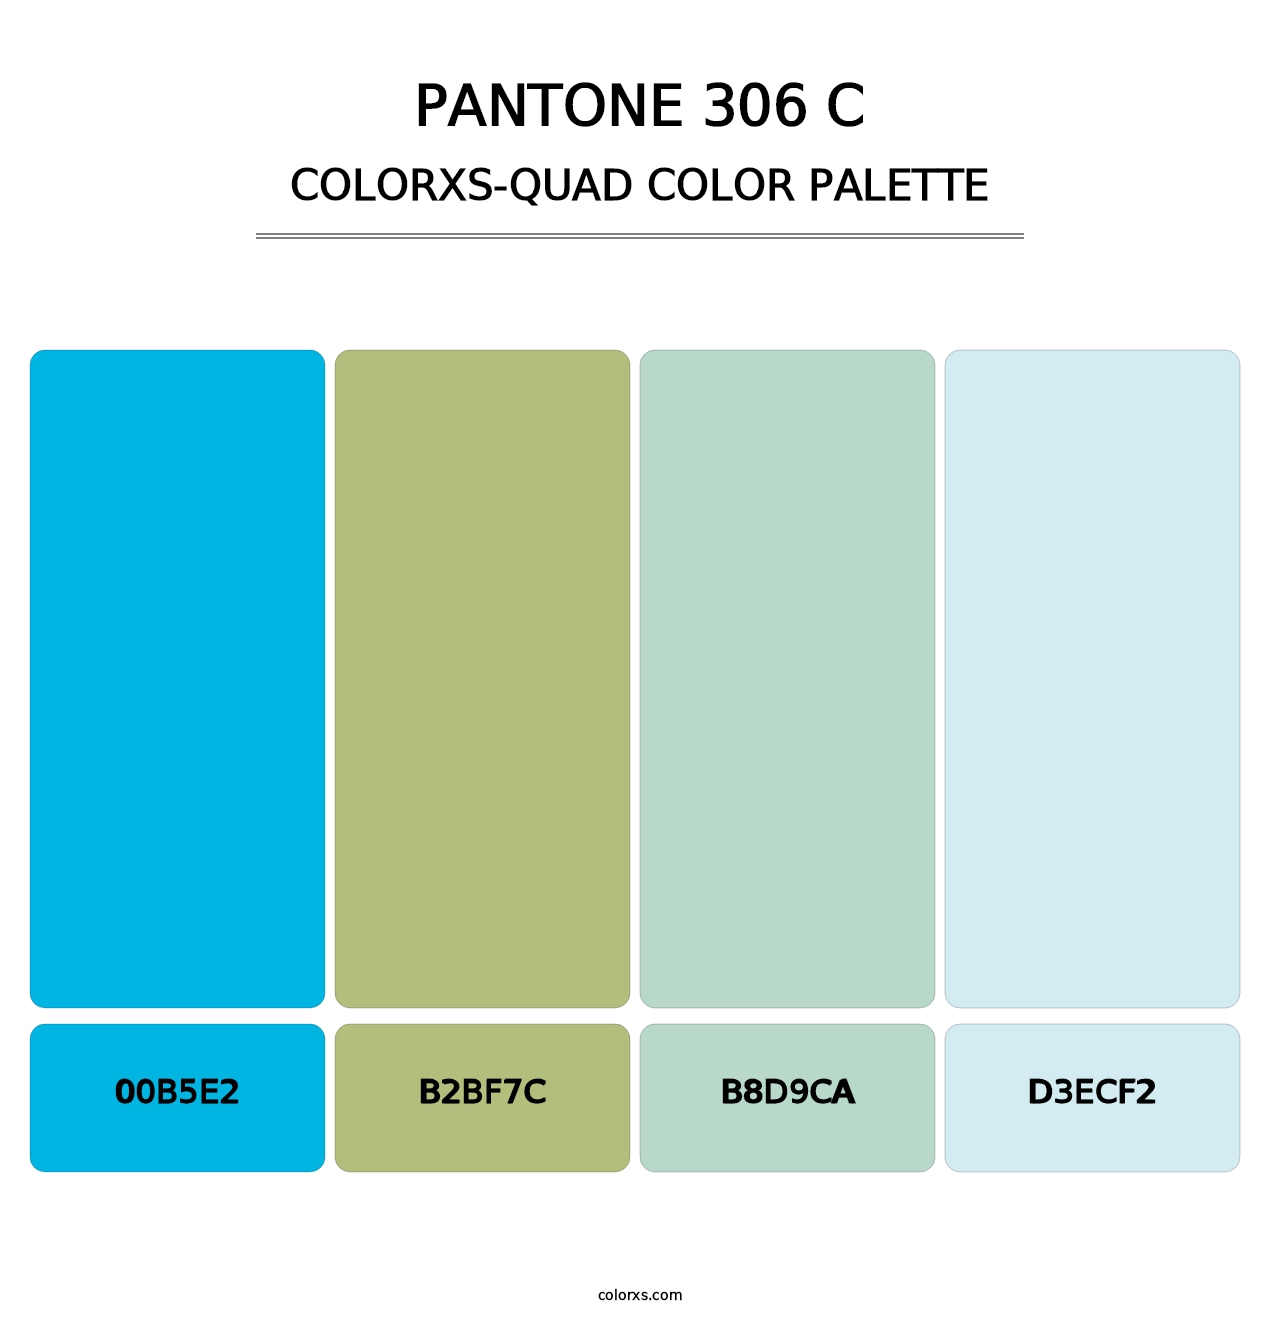 PANTONE 306 C - Colorxs Quad Palette